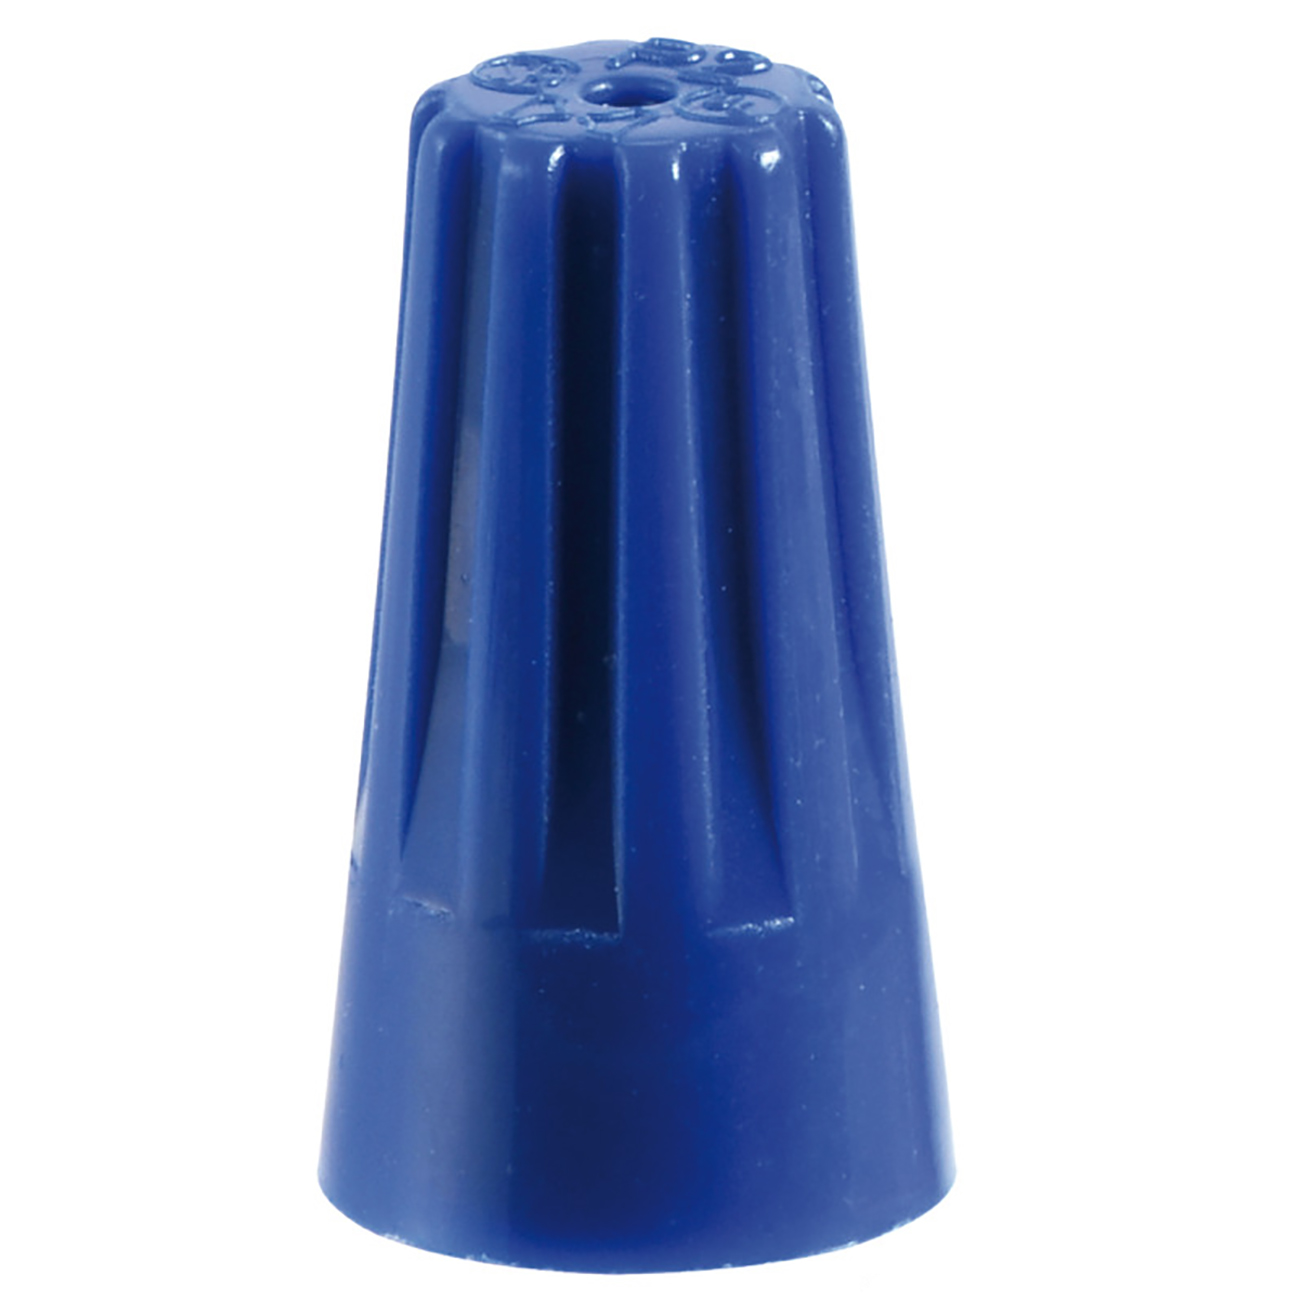 Колпачок из синего пластика для скрутки проводов 17.2 х 10 х 7.9 мм 100 штук, Osculati 14.155.02